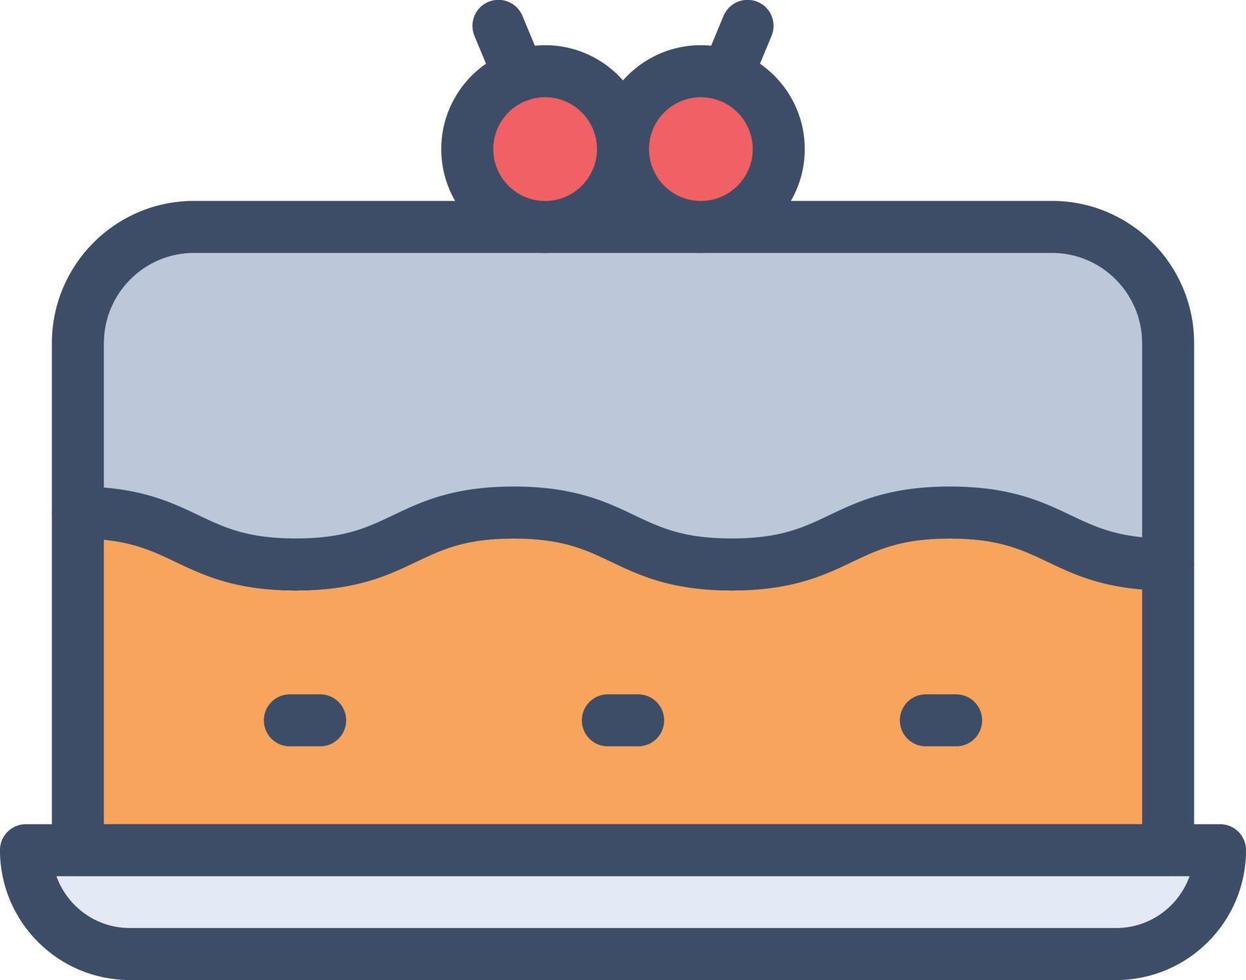 illustrazione vettoriale della torta su uno sfondo. simboli di qualità premium. icone vettoriali per il concetto e la progettazione grafica.